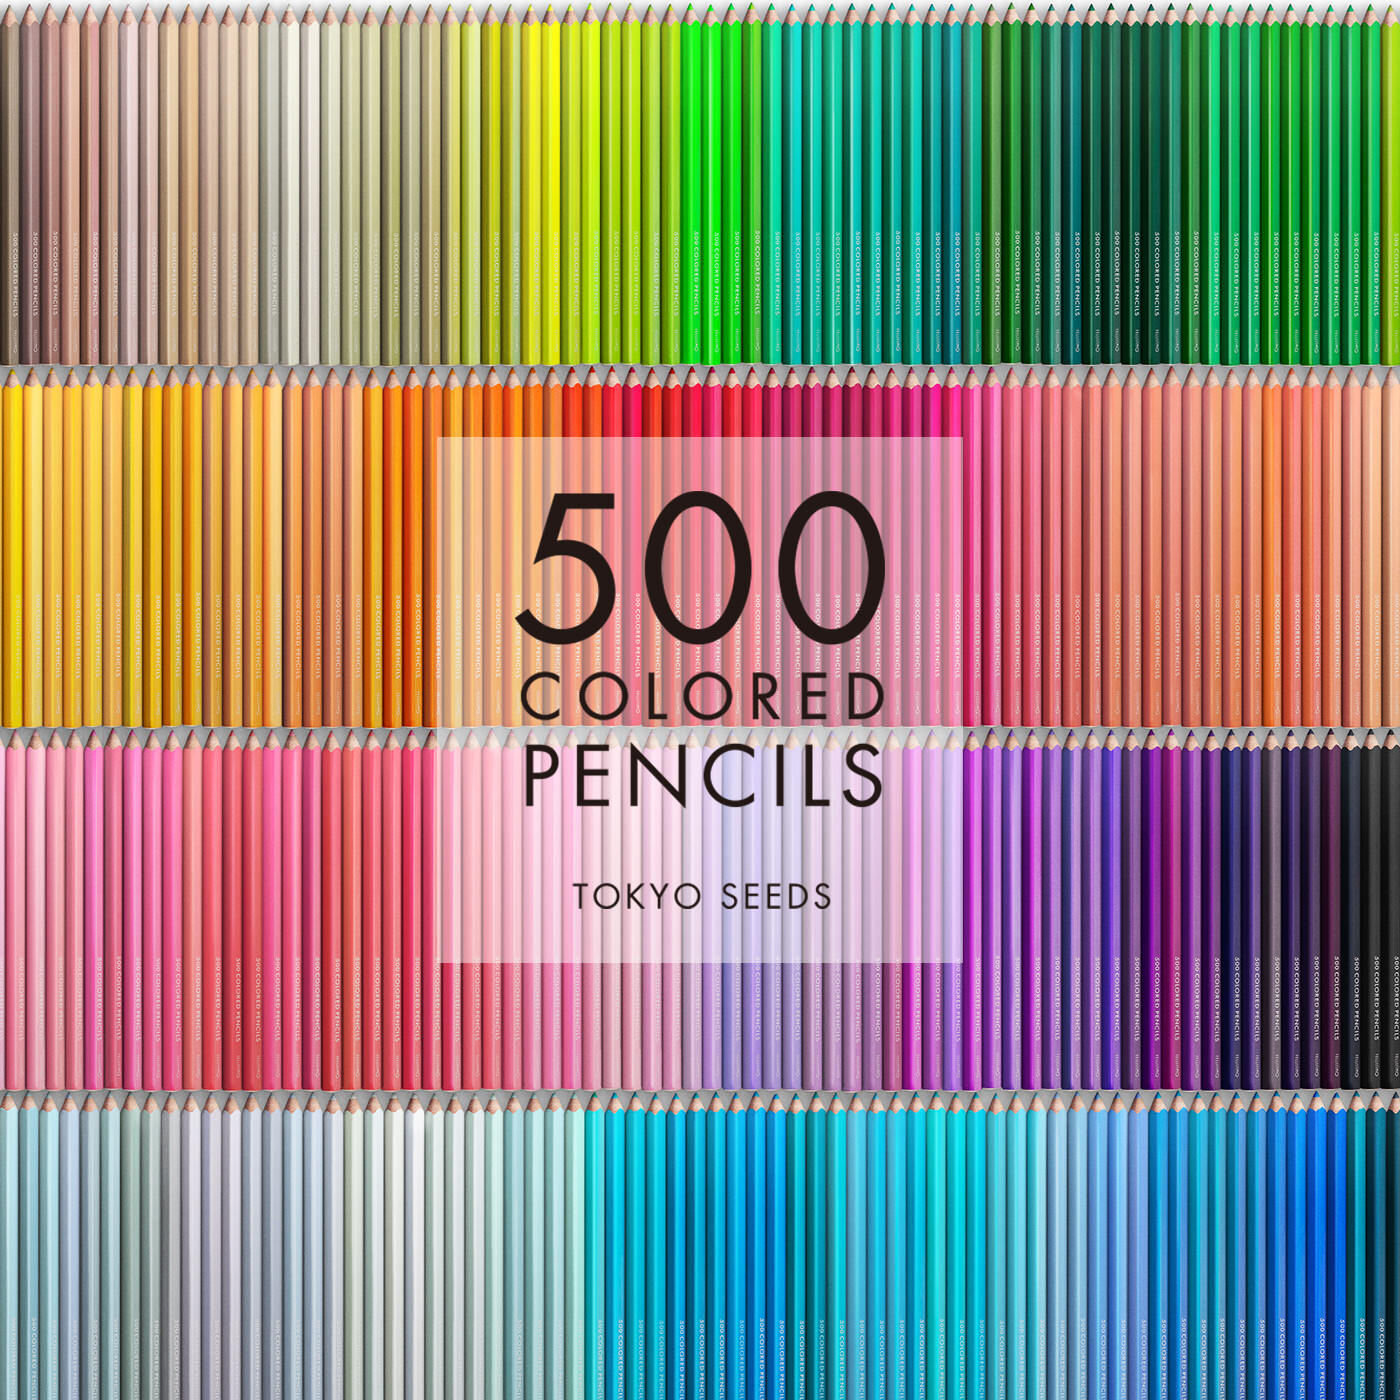 Real Stock|【37/500 MIAMI MUDDLE】500色の色えんぴつ TOKYO SEEDS|1992年、世界初の「500色」という膨大な色数の色えんぴつが誕生して以来、その販売数は発売当初から合わせると、世界55ヵ国10万セット以上。今回、メイド・イン・ジャパンにこだわり、すべてが新しく生まれ変わって登場しました。